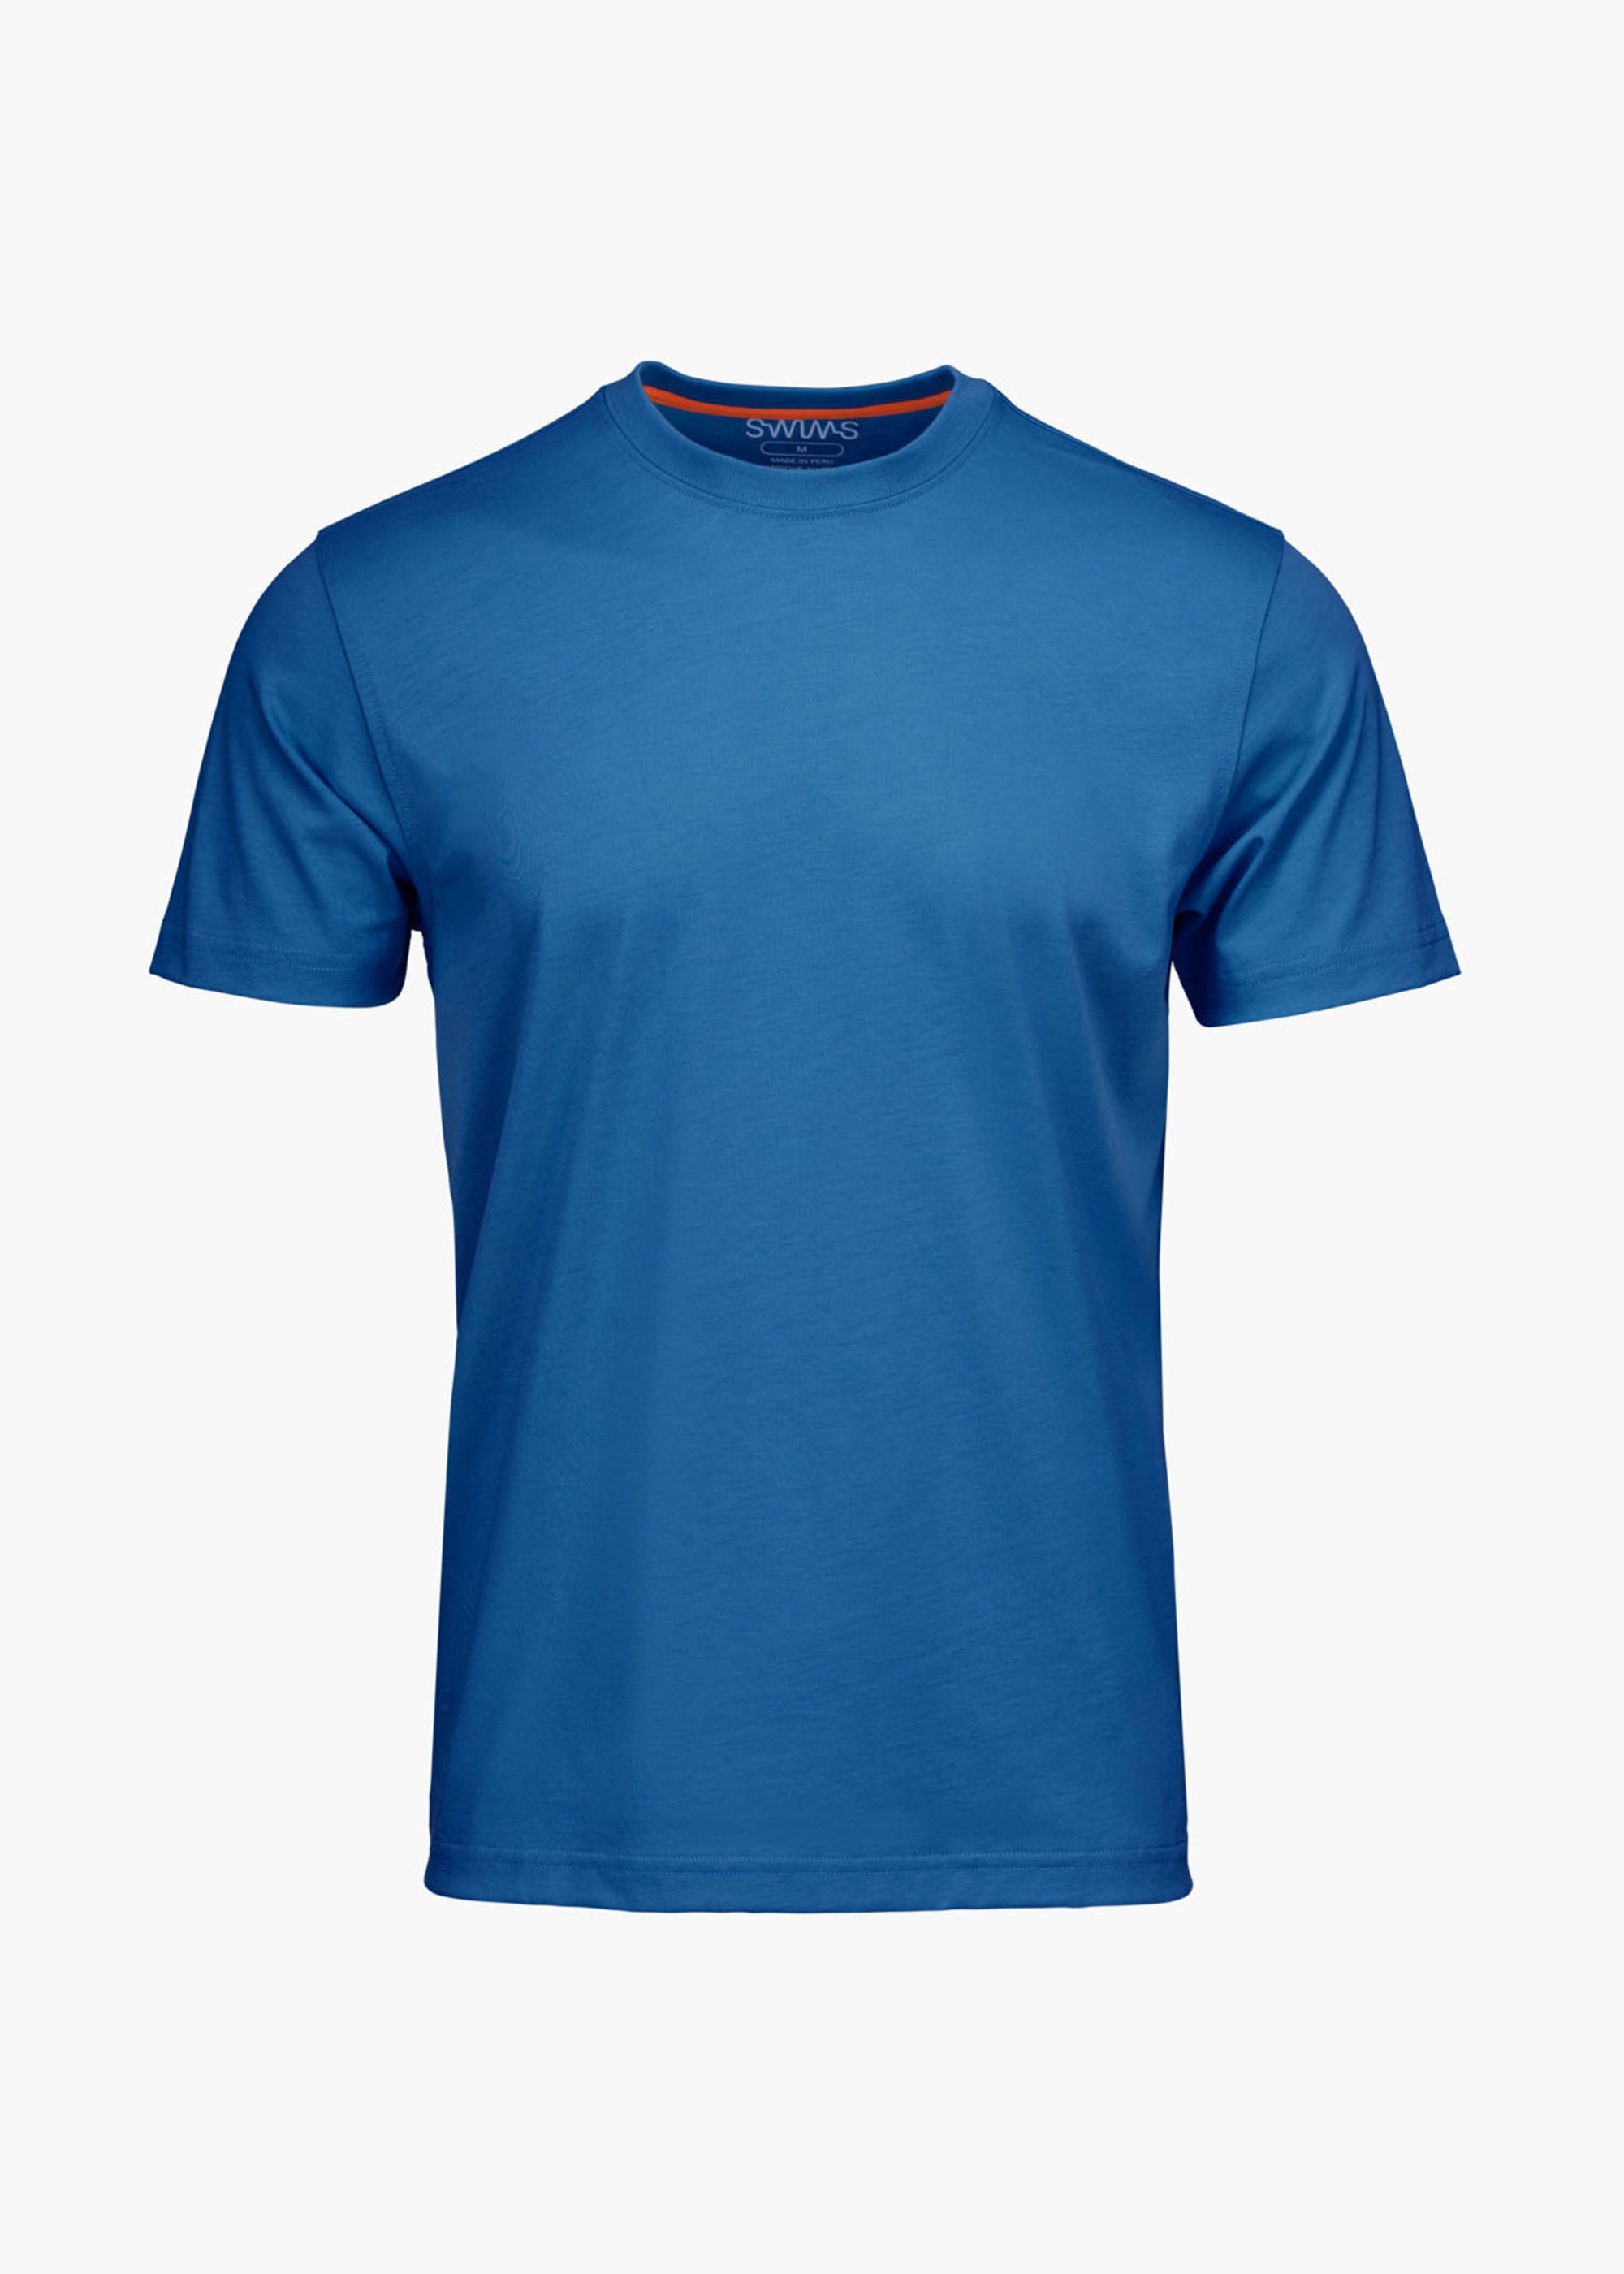 Aksla T Shirt - background::white,variant::Ensign Blue